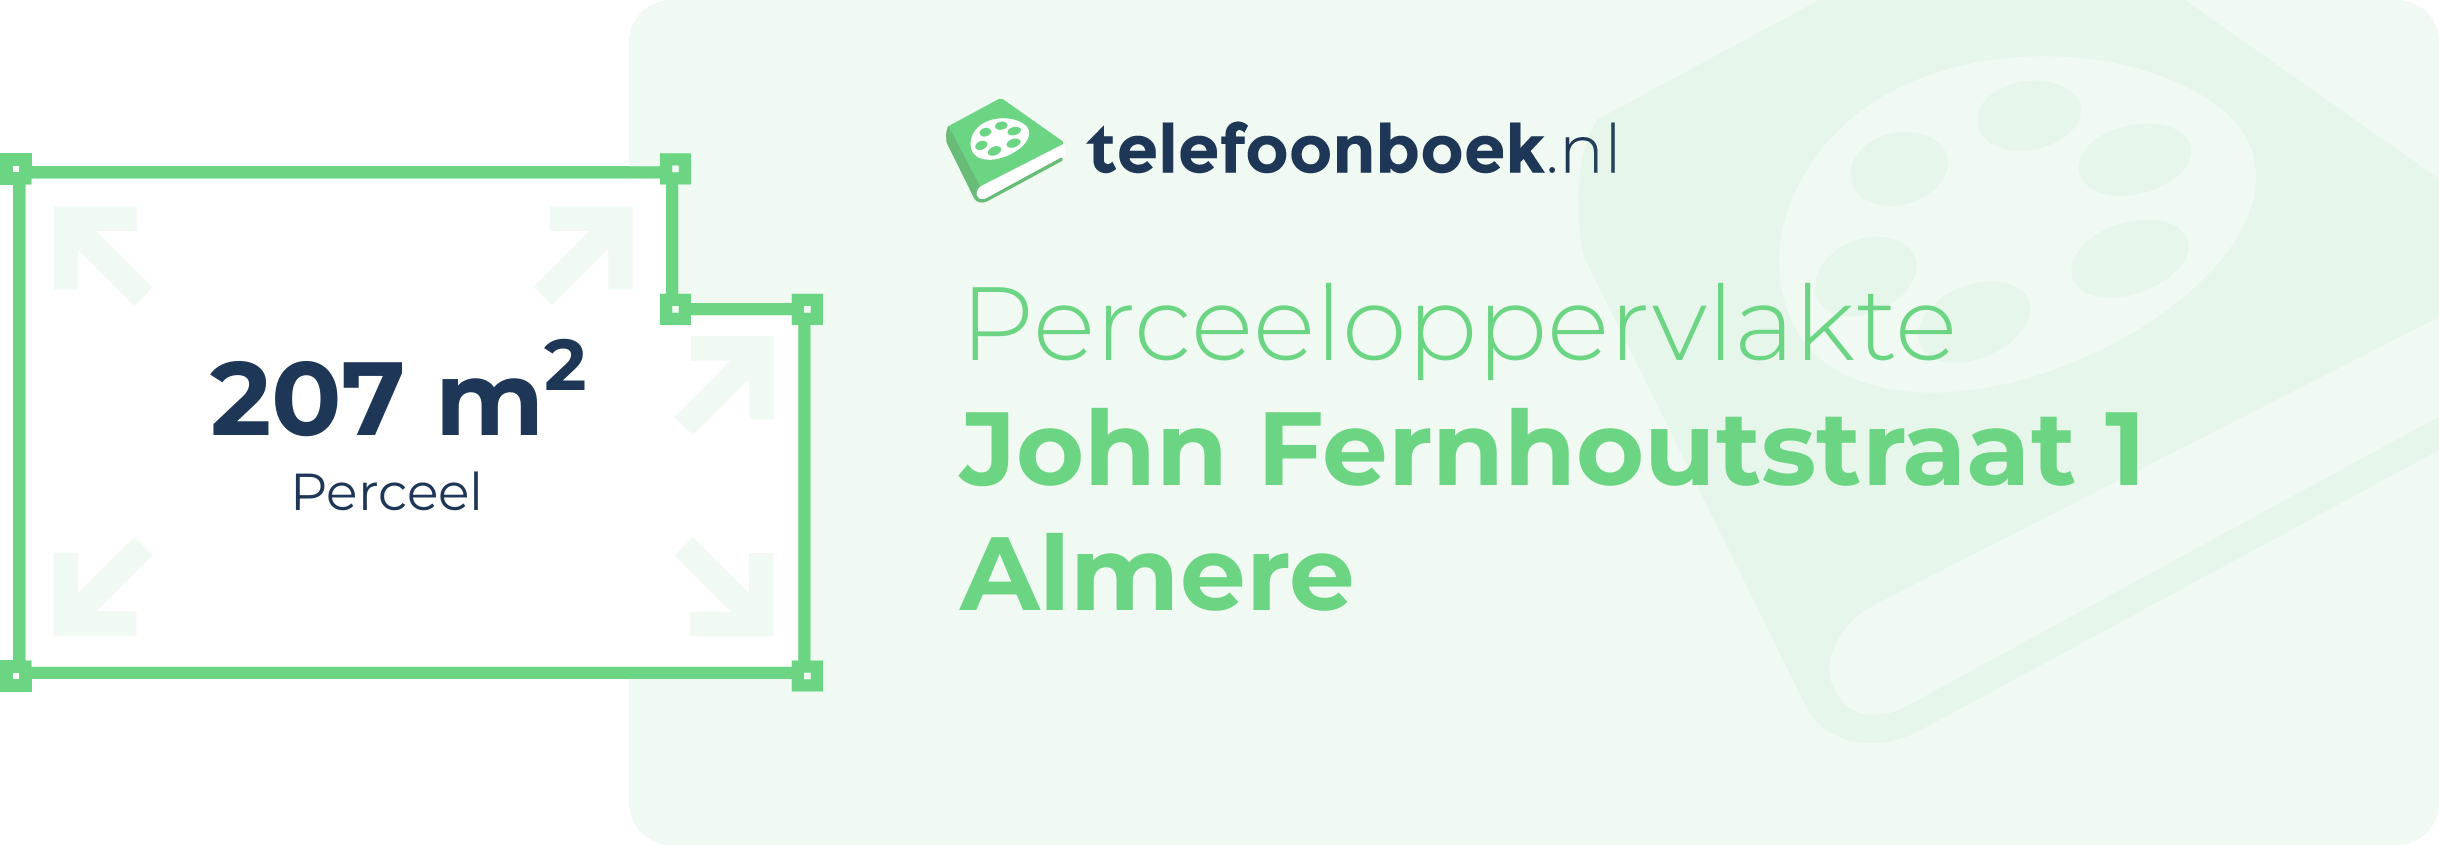 Perceeloppervlakte John Fernhoutstraat 1 Almere